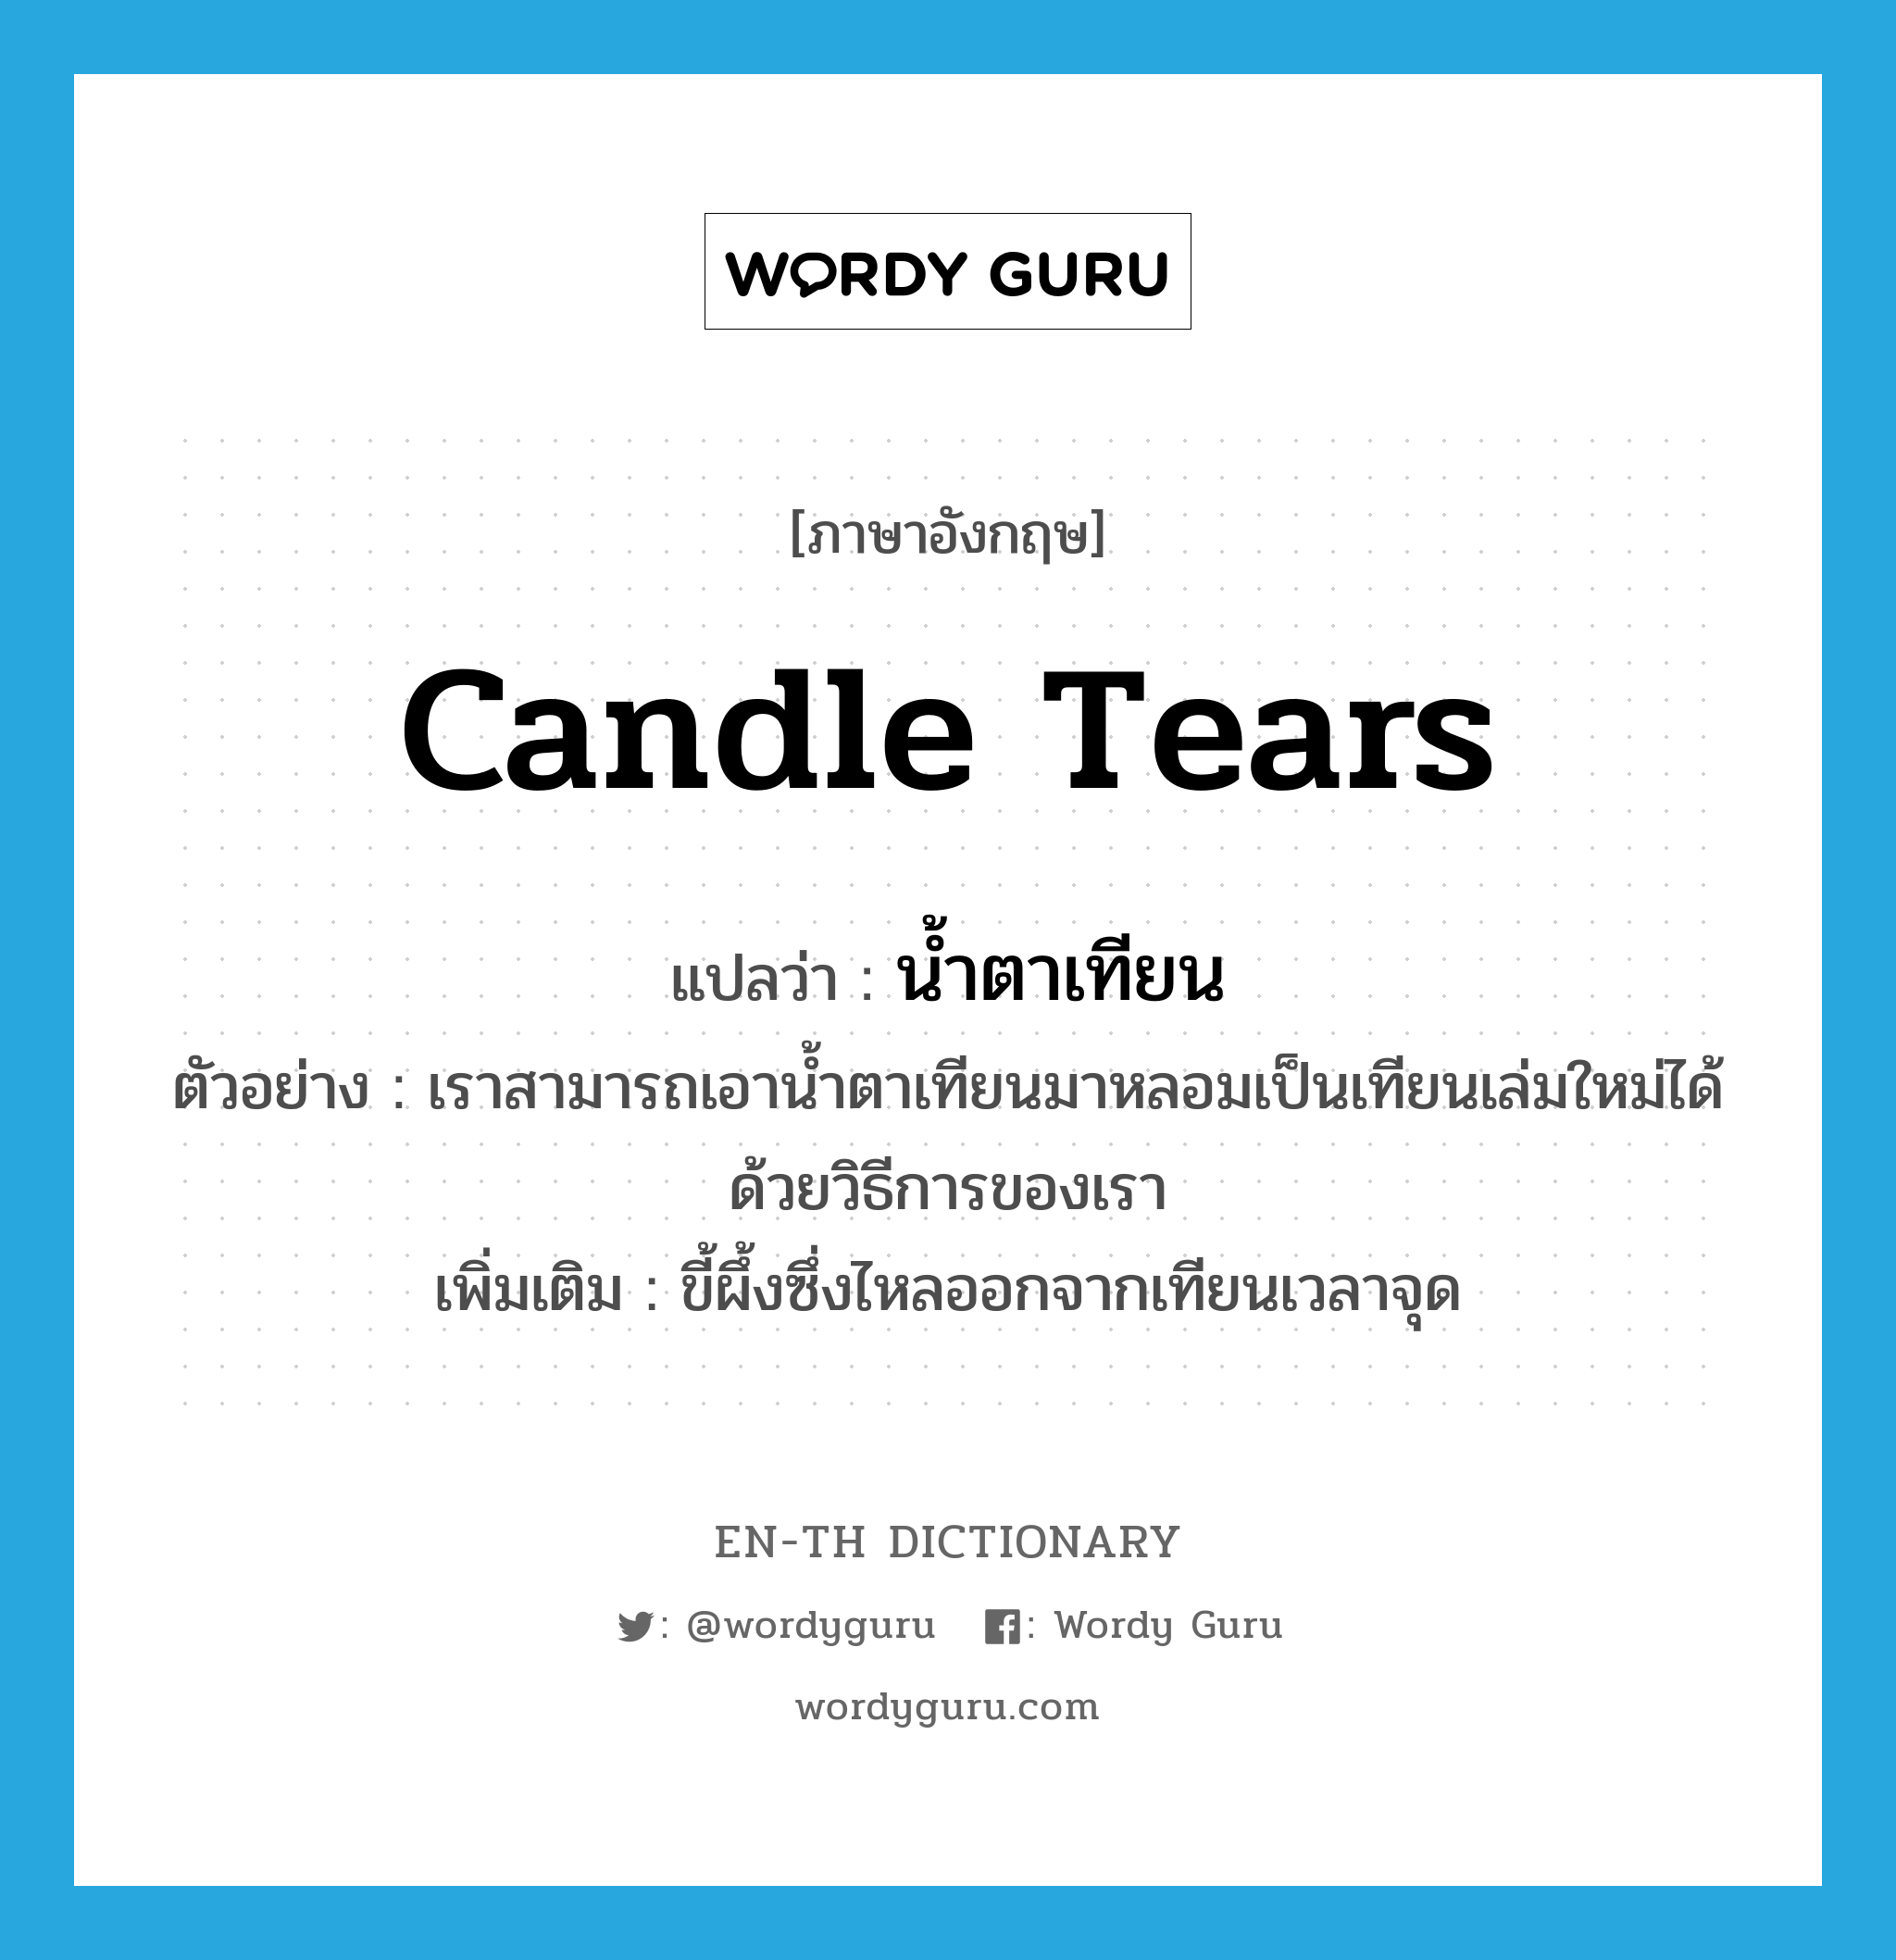 candle tears แปลว่า?, คำศัพท์ภาษาอังกฤษ candle tears แปลว่า น้ำตาเทียน ประเภท N ตัวอย่าง เราสามารถเอาน้ำตาเทียนมาหลอมเป็นเทียนเล่มใหม่ได้ด้วยวิธีการของเรา เพิ่มเติม ขี้ผึ้งซึ่งไหลออกจากเทียนเวลาจุด หมวด N